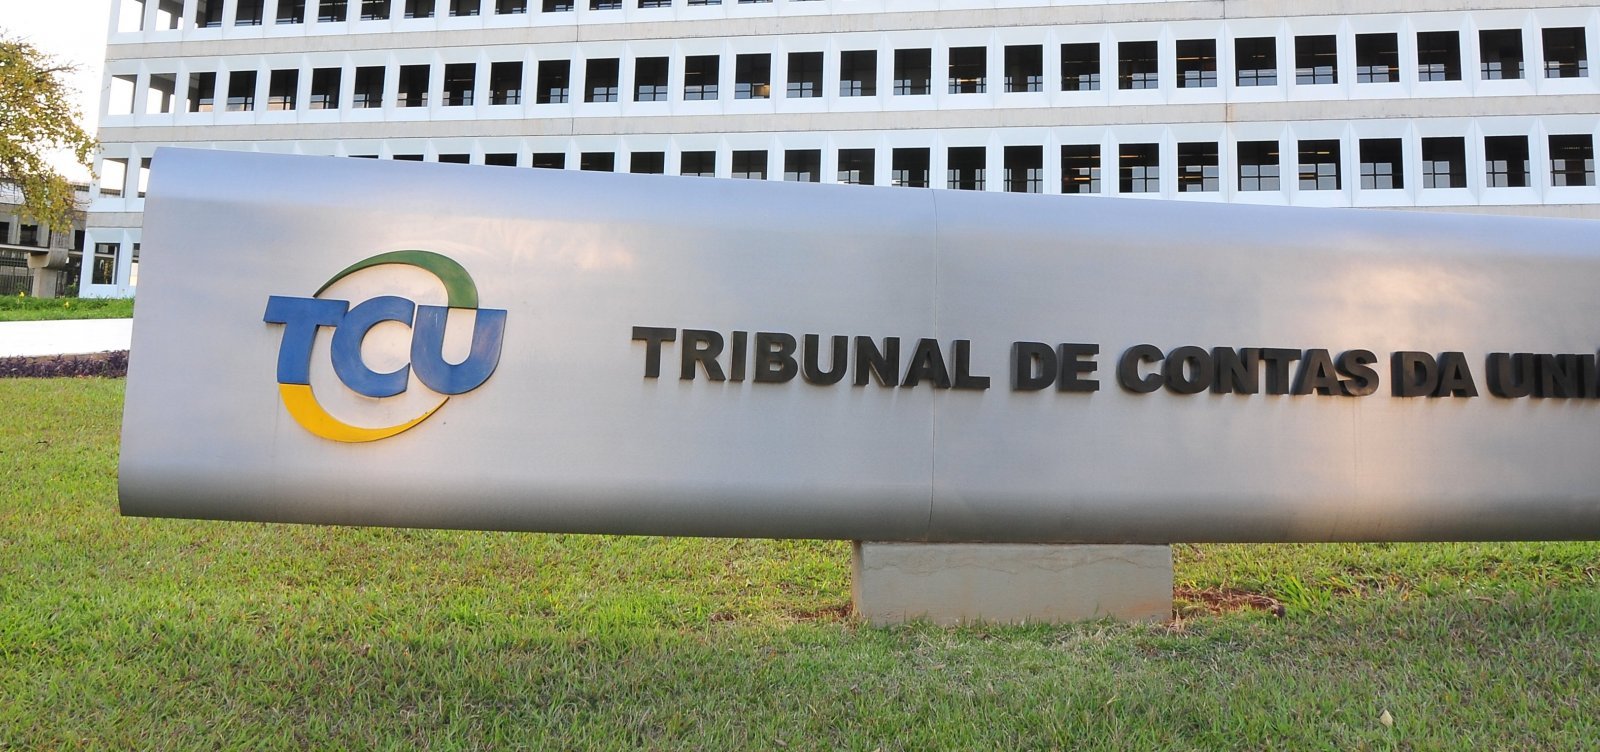 TCU aponta superfaturamento e “indícios de fraudes” em contratos de órgãos federais durante governo Bolsonaro